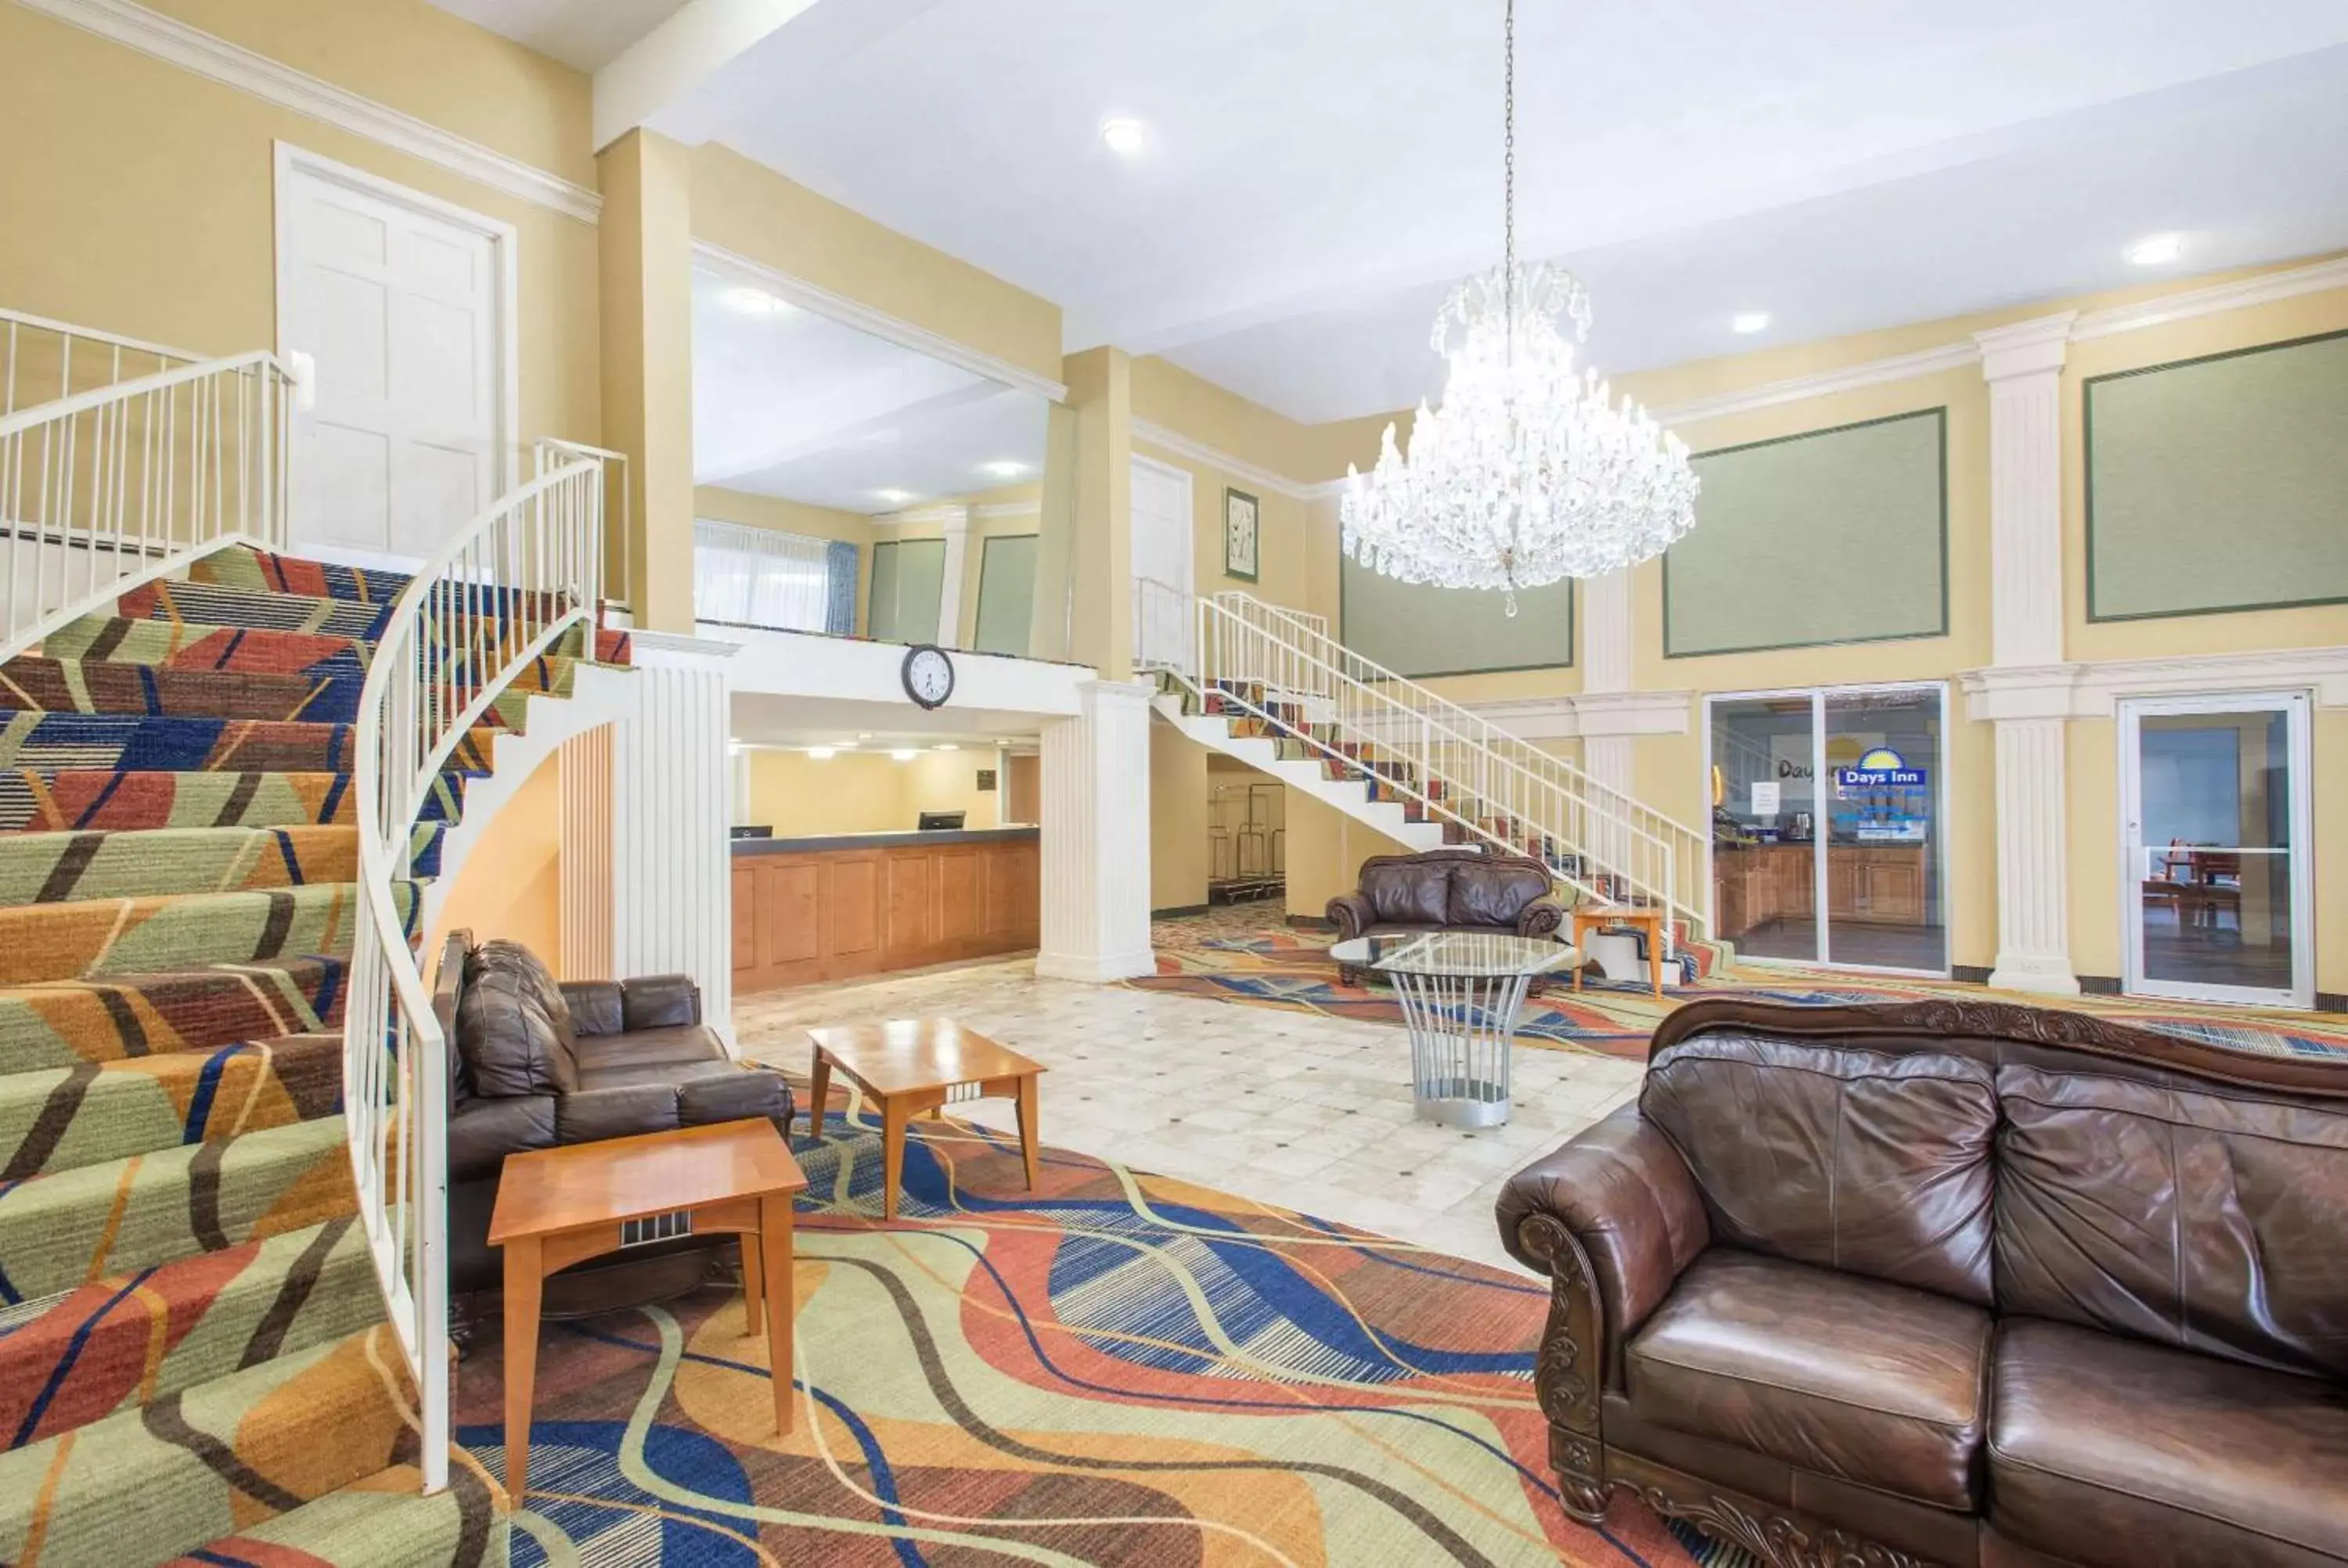 Lobby or reception, Lobby/Reception in Days Inn by Wyndham Roanoke Near I-81